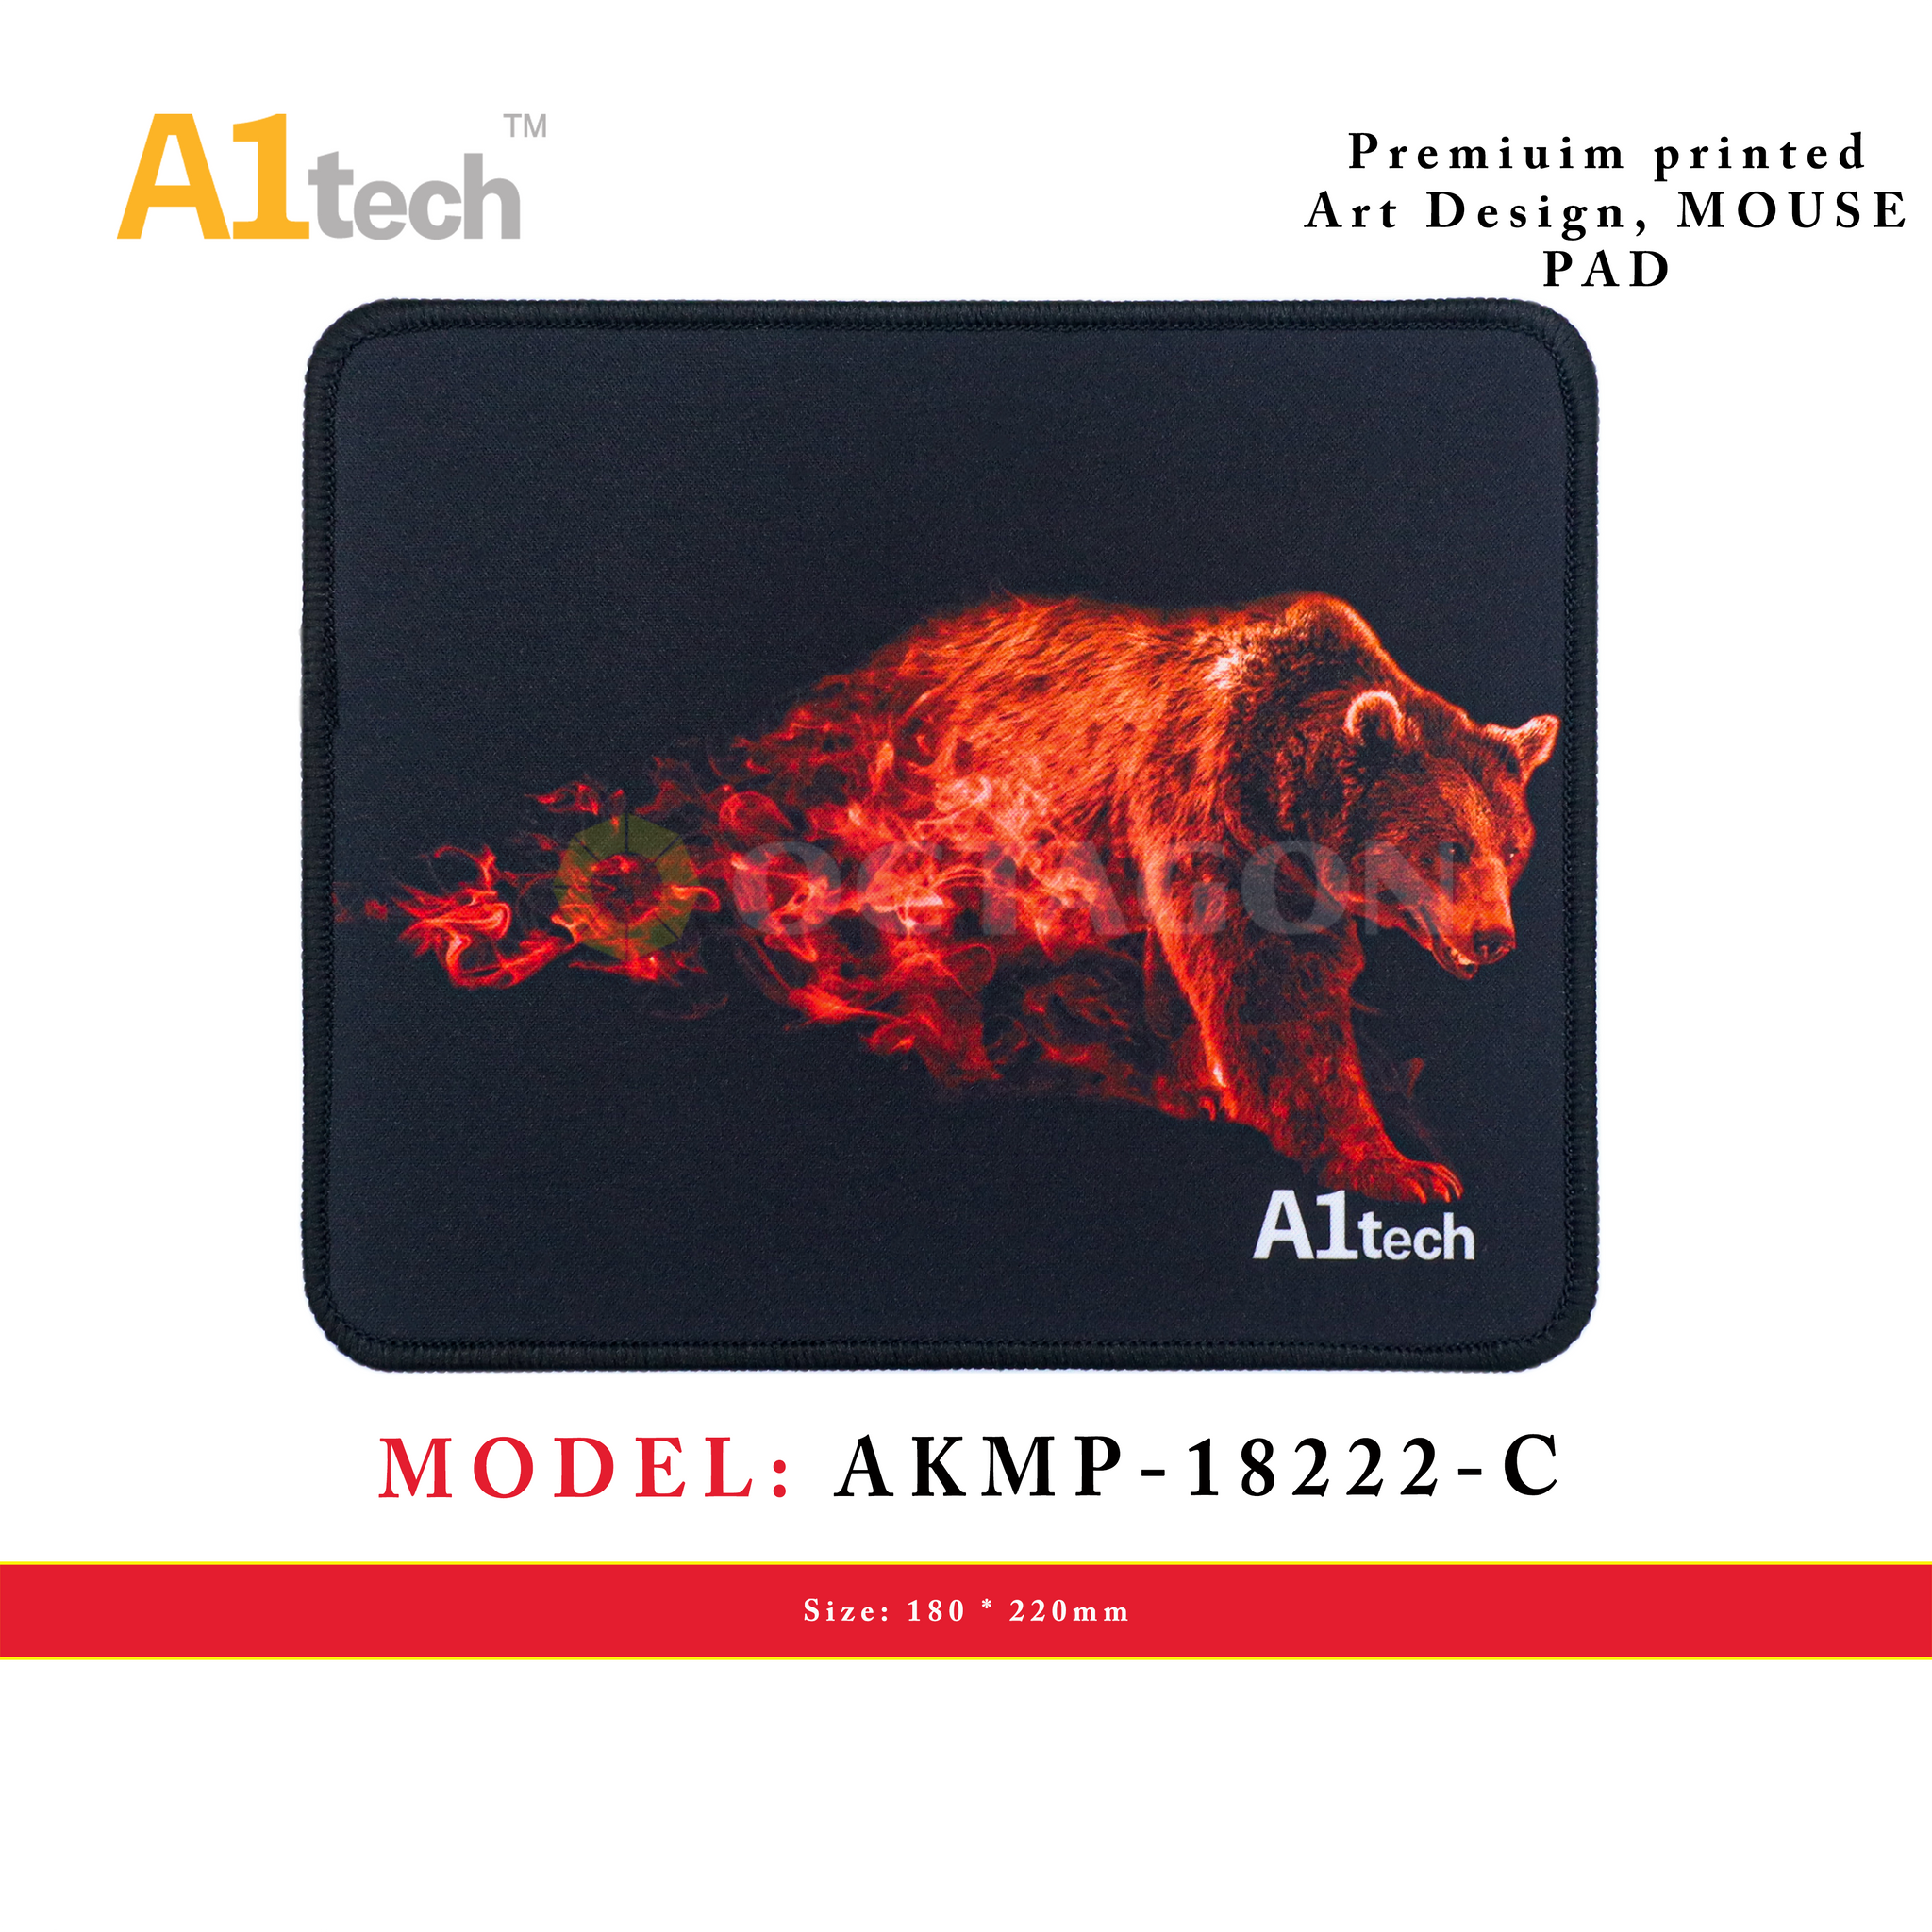 A1TECH AKMP-18222-C MOUSE PAD